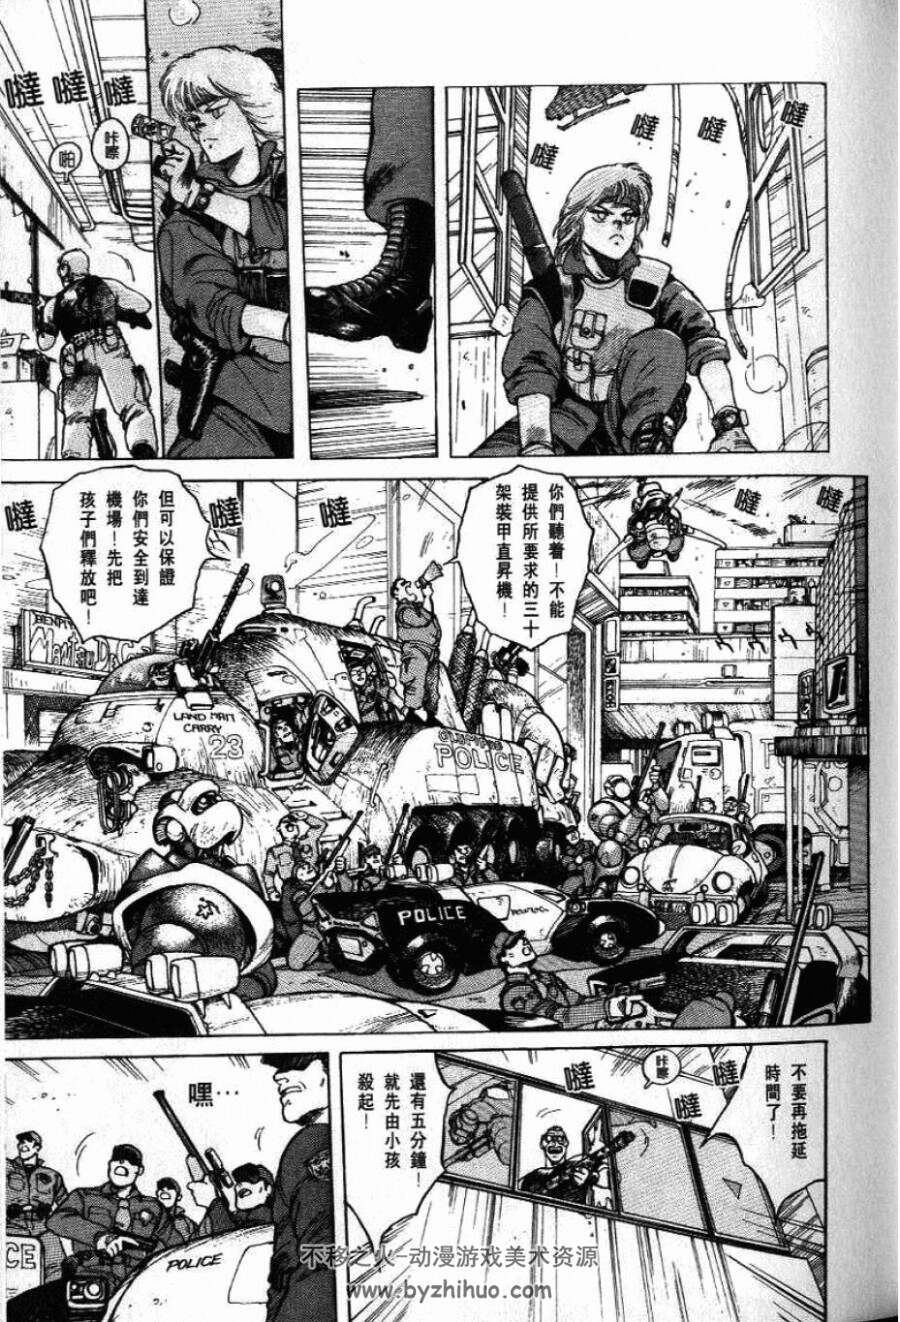 中长篇日系漫画(一般向) 漫画合集第五弹 共30部（300多部陆续更新~）